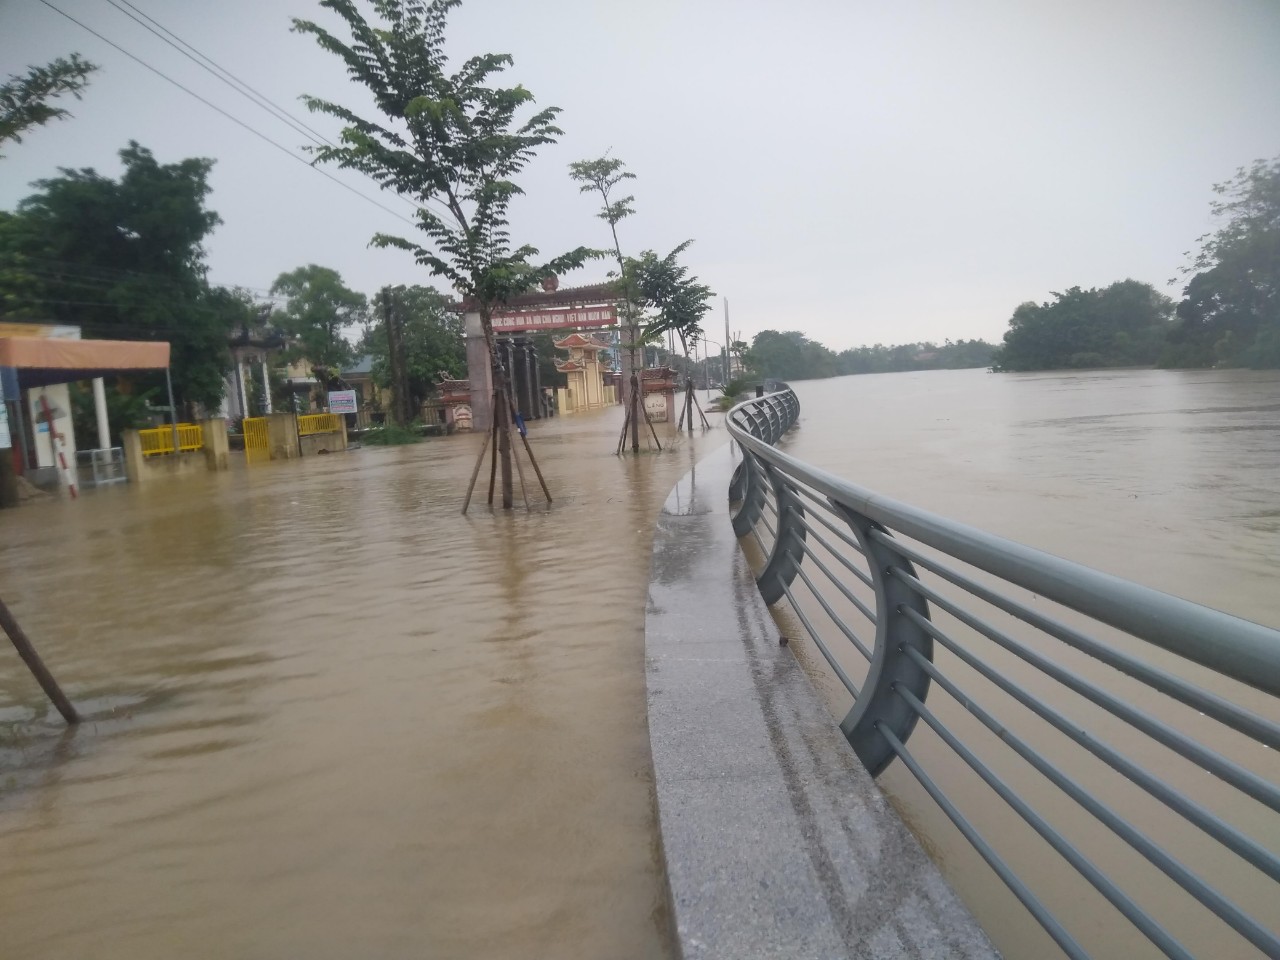 Hiện tại nước sông Ô Lâu đang dâng cao những vùng trũng của huyện Hải Lăng tỉnh Quảng Trị đang ngập sâu trong nước lũ